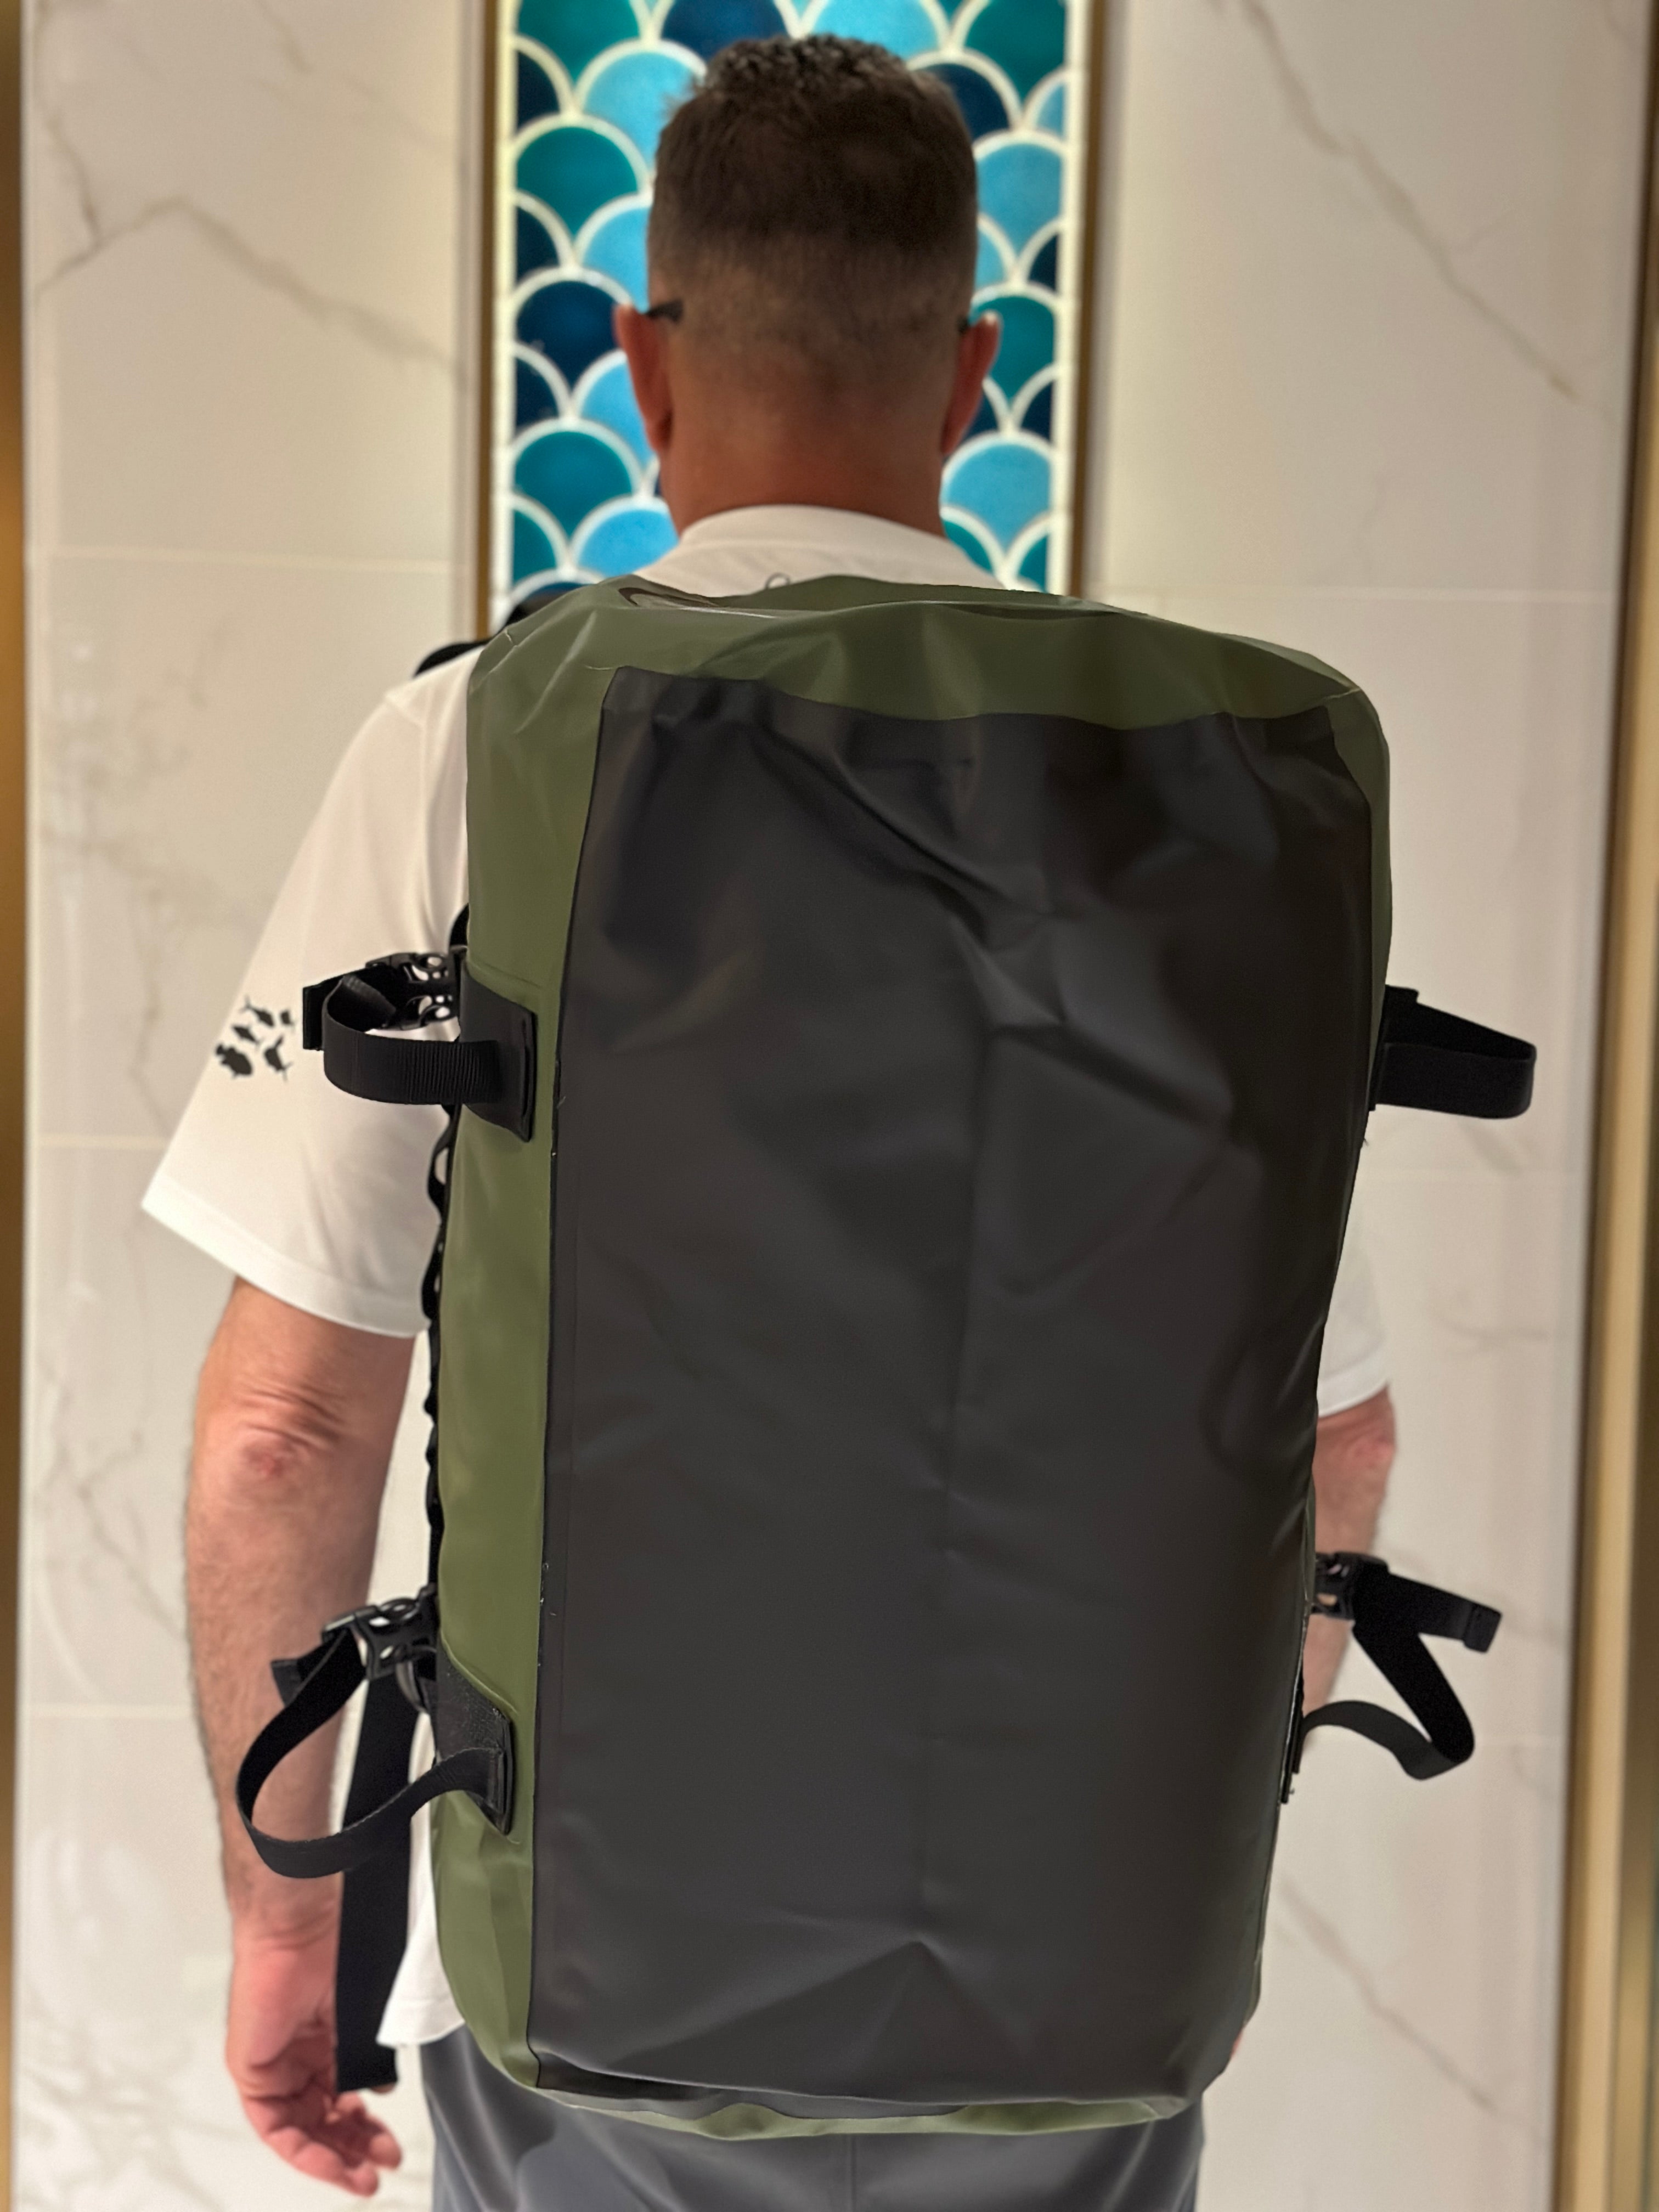 Palmarius Duffel Backpack 60L 25" x 14" x 14" (60x35x35CM)